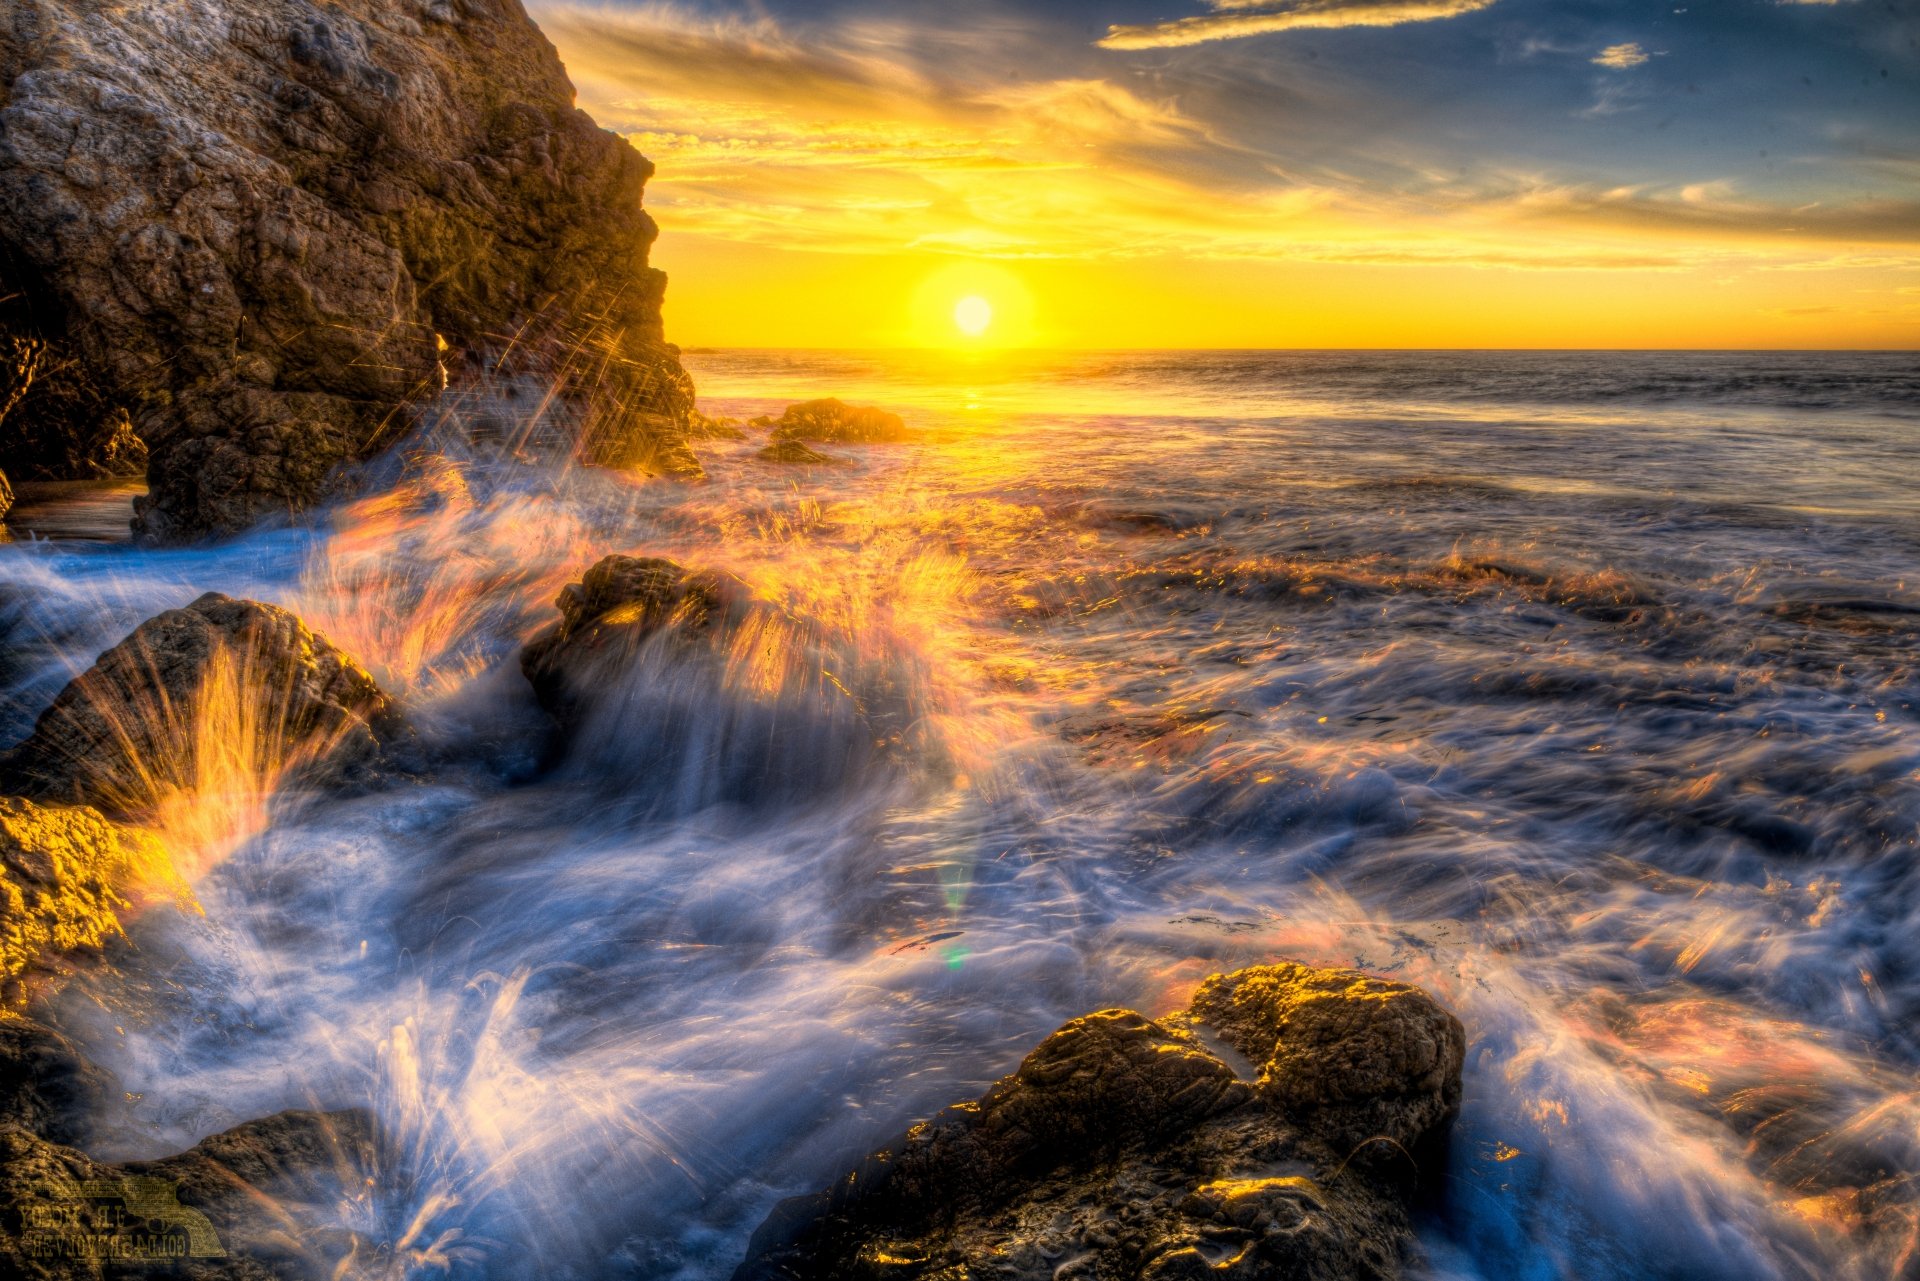  Malibu  Sunset  5k Retina Ultra HD Wallpaper Background 